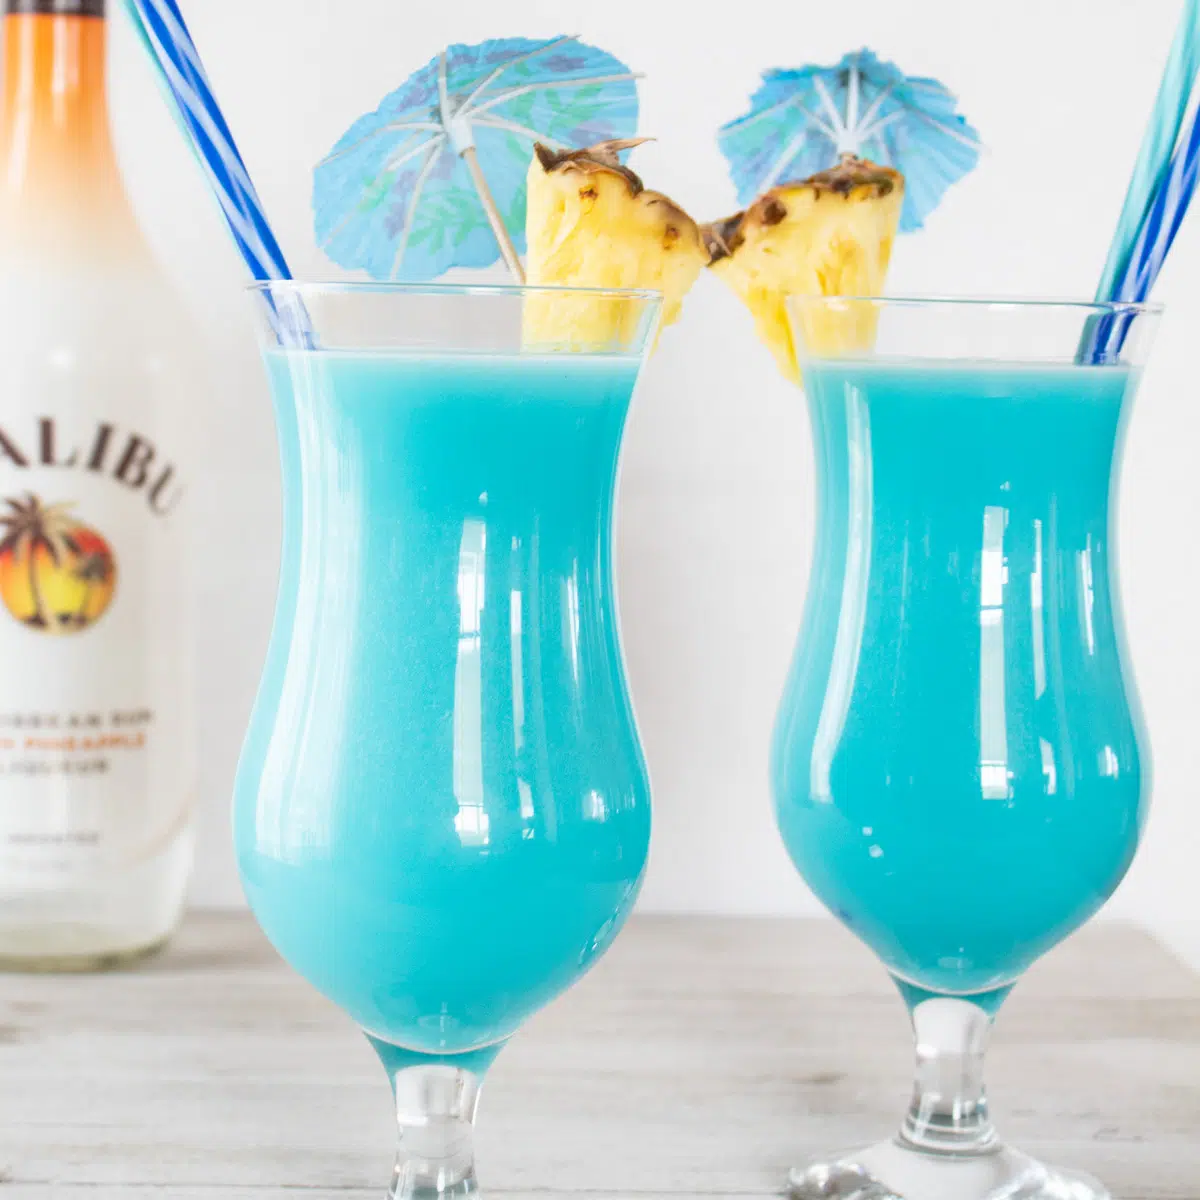 Cóctel helado azul hawaiano servido en vasos huracán con guarnición de piña.